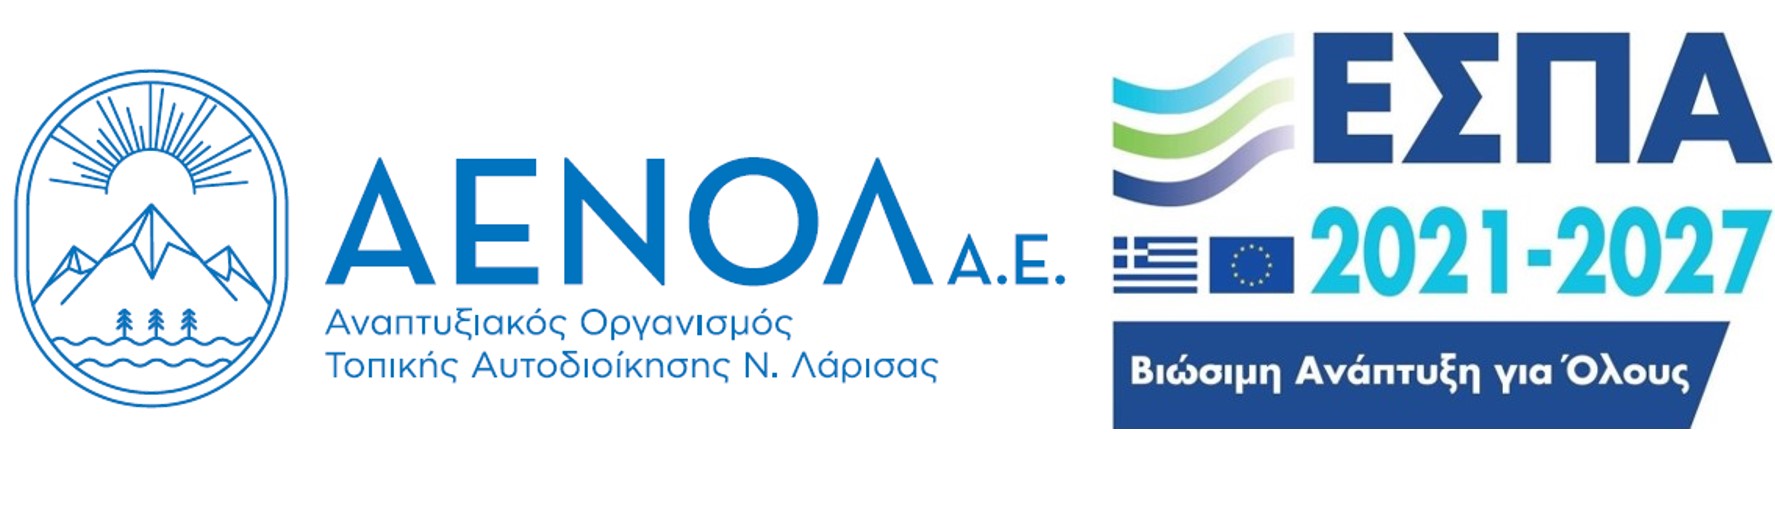 Δεύτερη θέση στην Ελλάδα για την "ΑΕΝΟΛ Α.Ε."